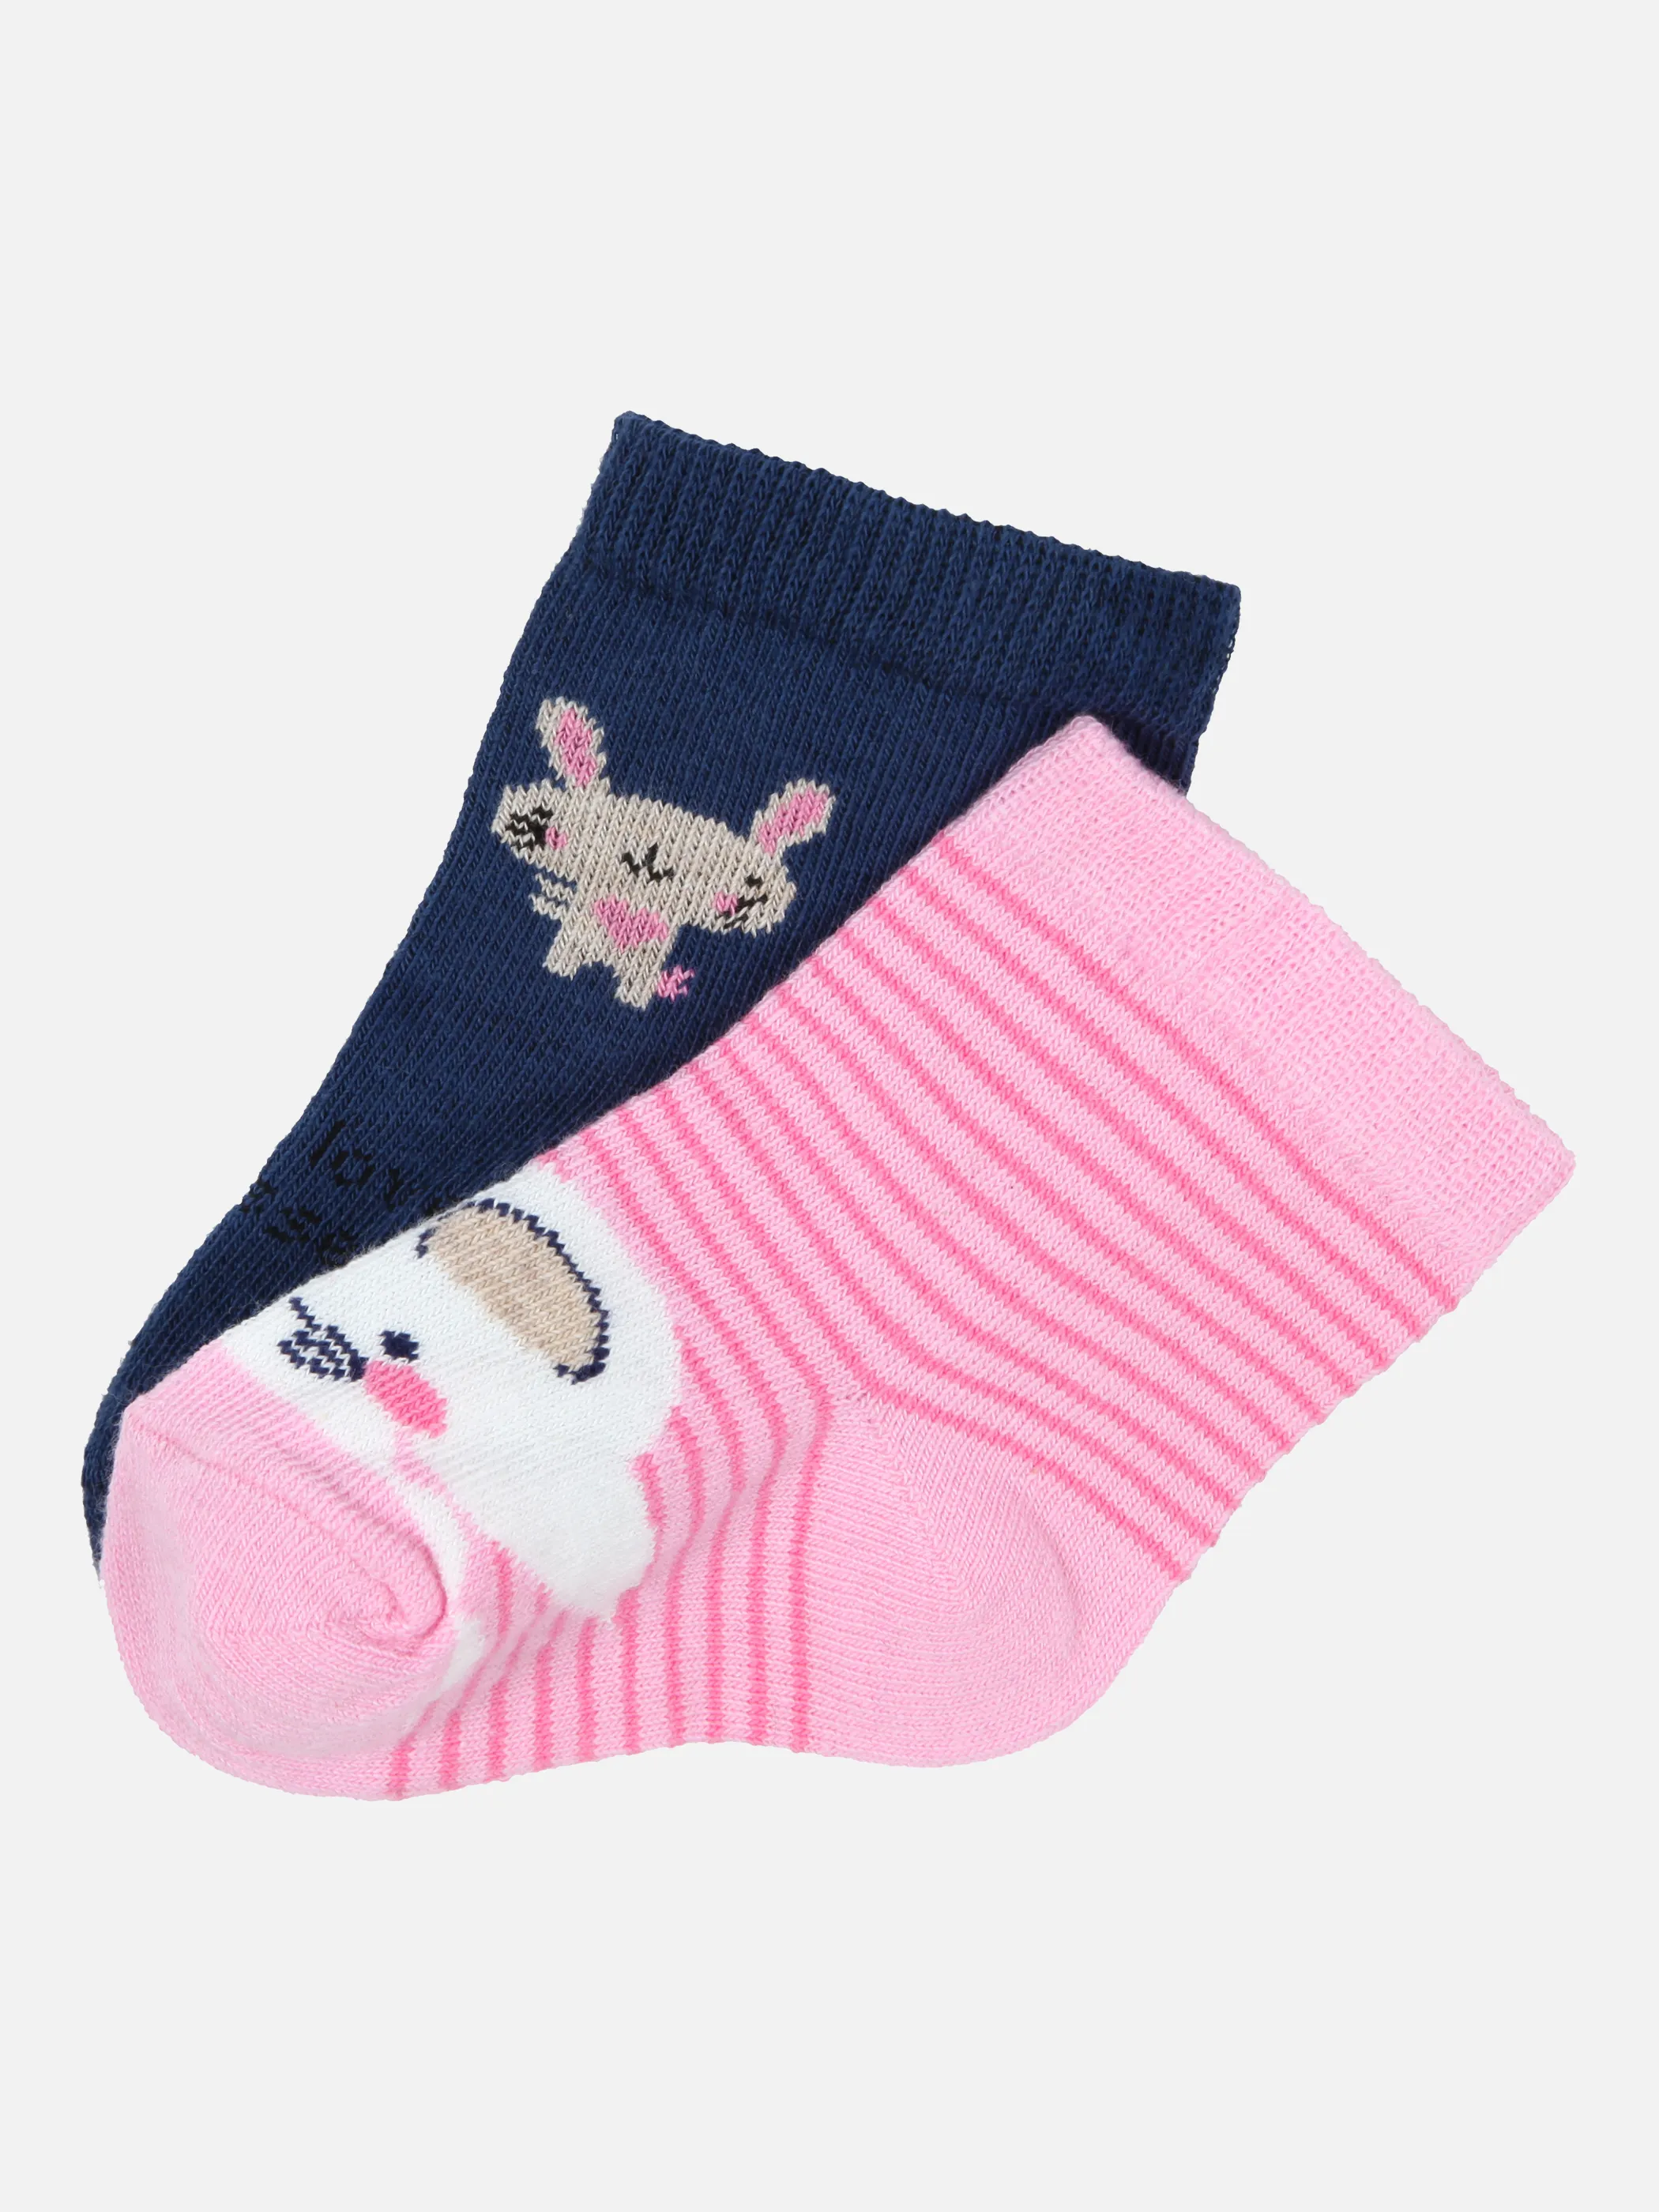 Bubble Gum Baby Girls Socken 2er Pack Mau Rosa 859400 DK BLUE/RO 1